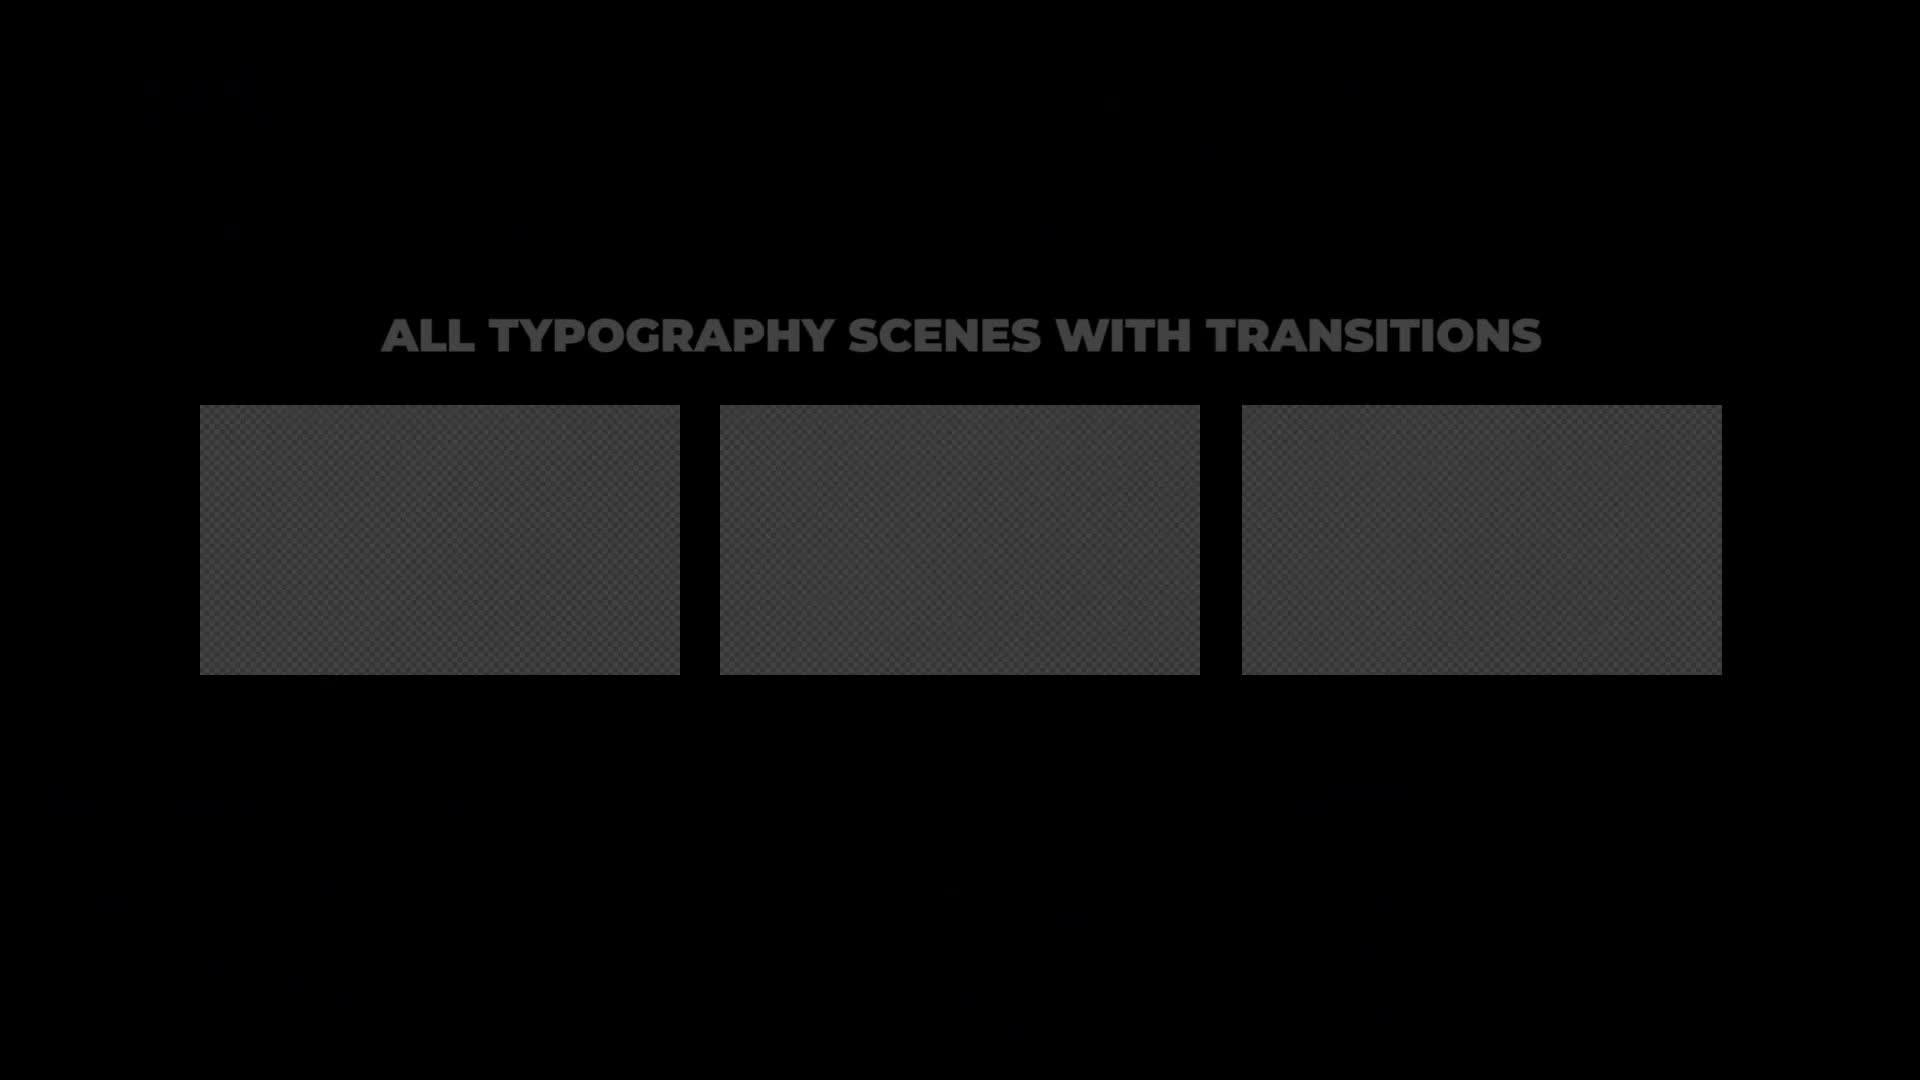 Trendy Typo Scenes Videohive 35156070 Premiere Pro Image 1